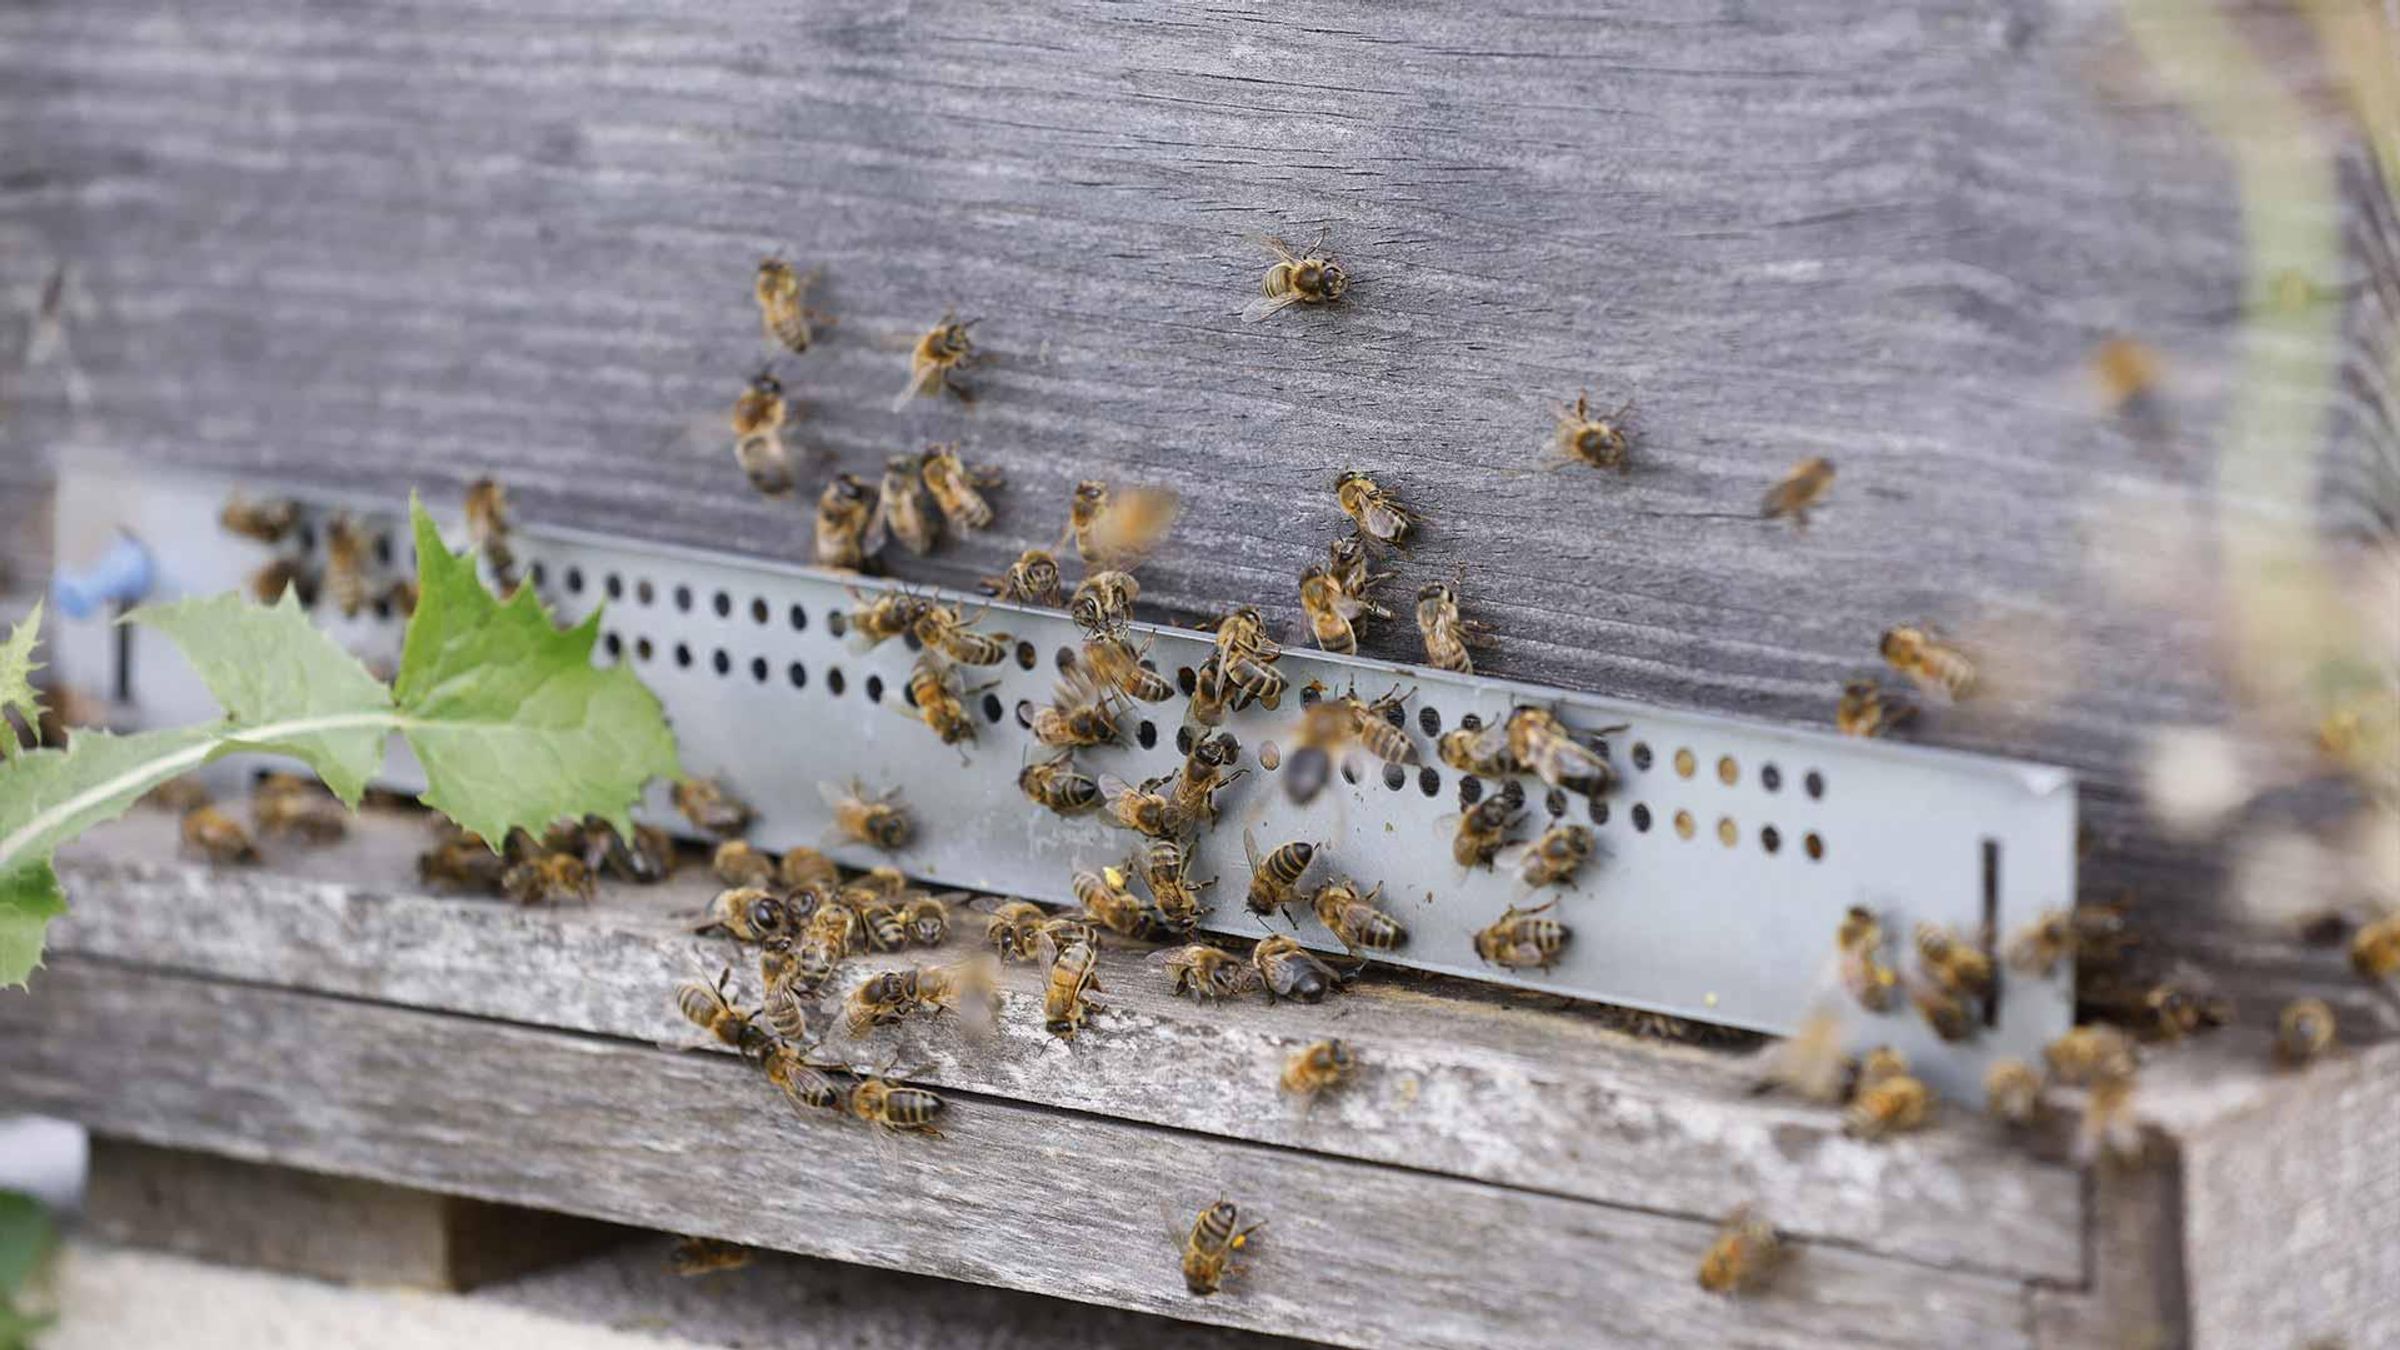 Des ruches sont installées sur le site et produisent régulièrement du miel, qui est offert aux employés, Vitry, France